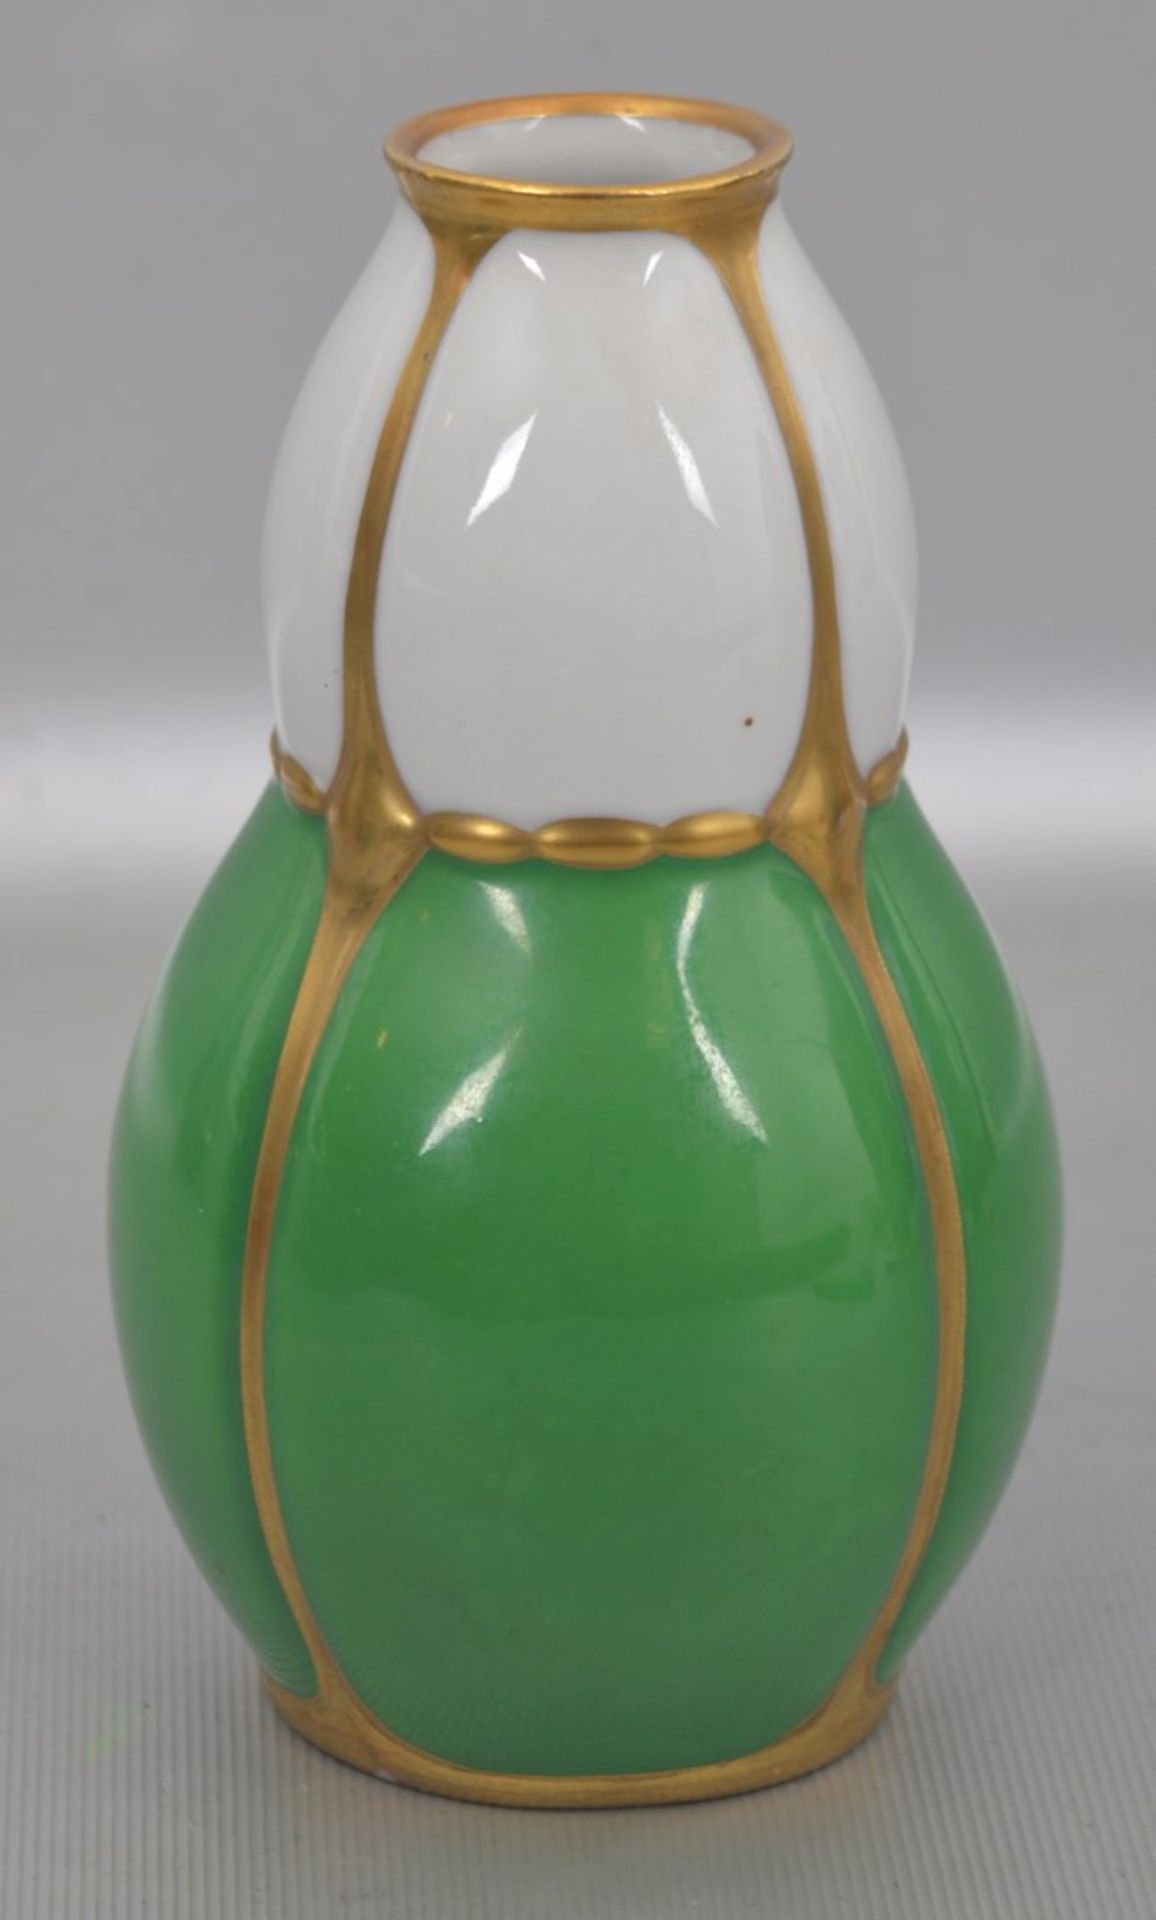 Jugendstil-Vaseleicht gebaucht, weiß und grün, gold verziert, H 14 cm, FM Melzer & Ortloff, um 1910